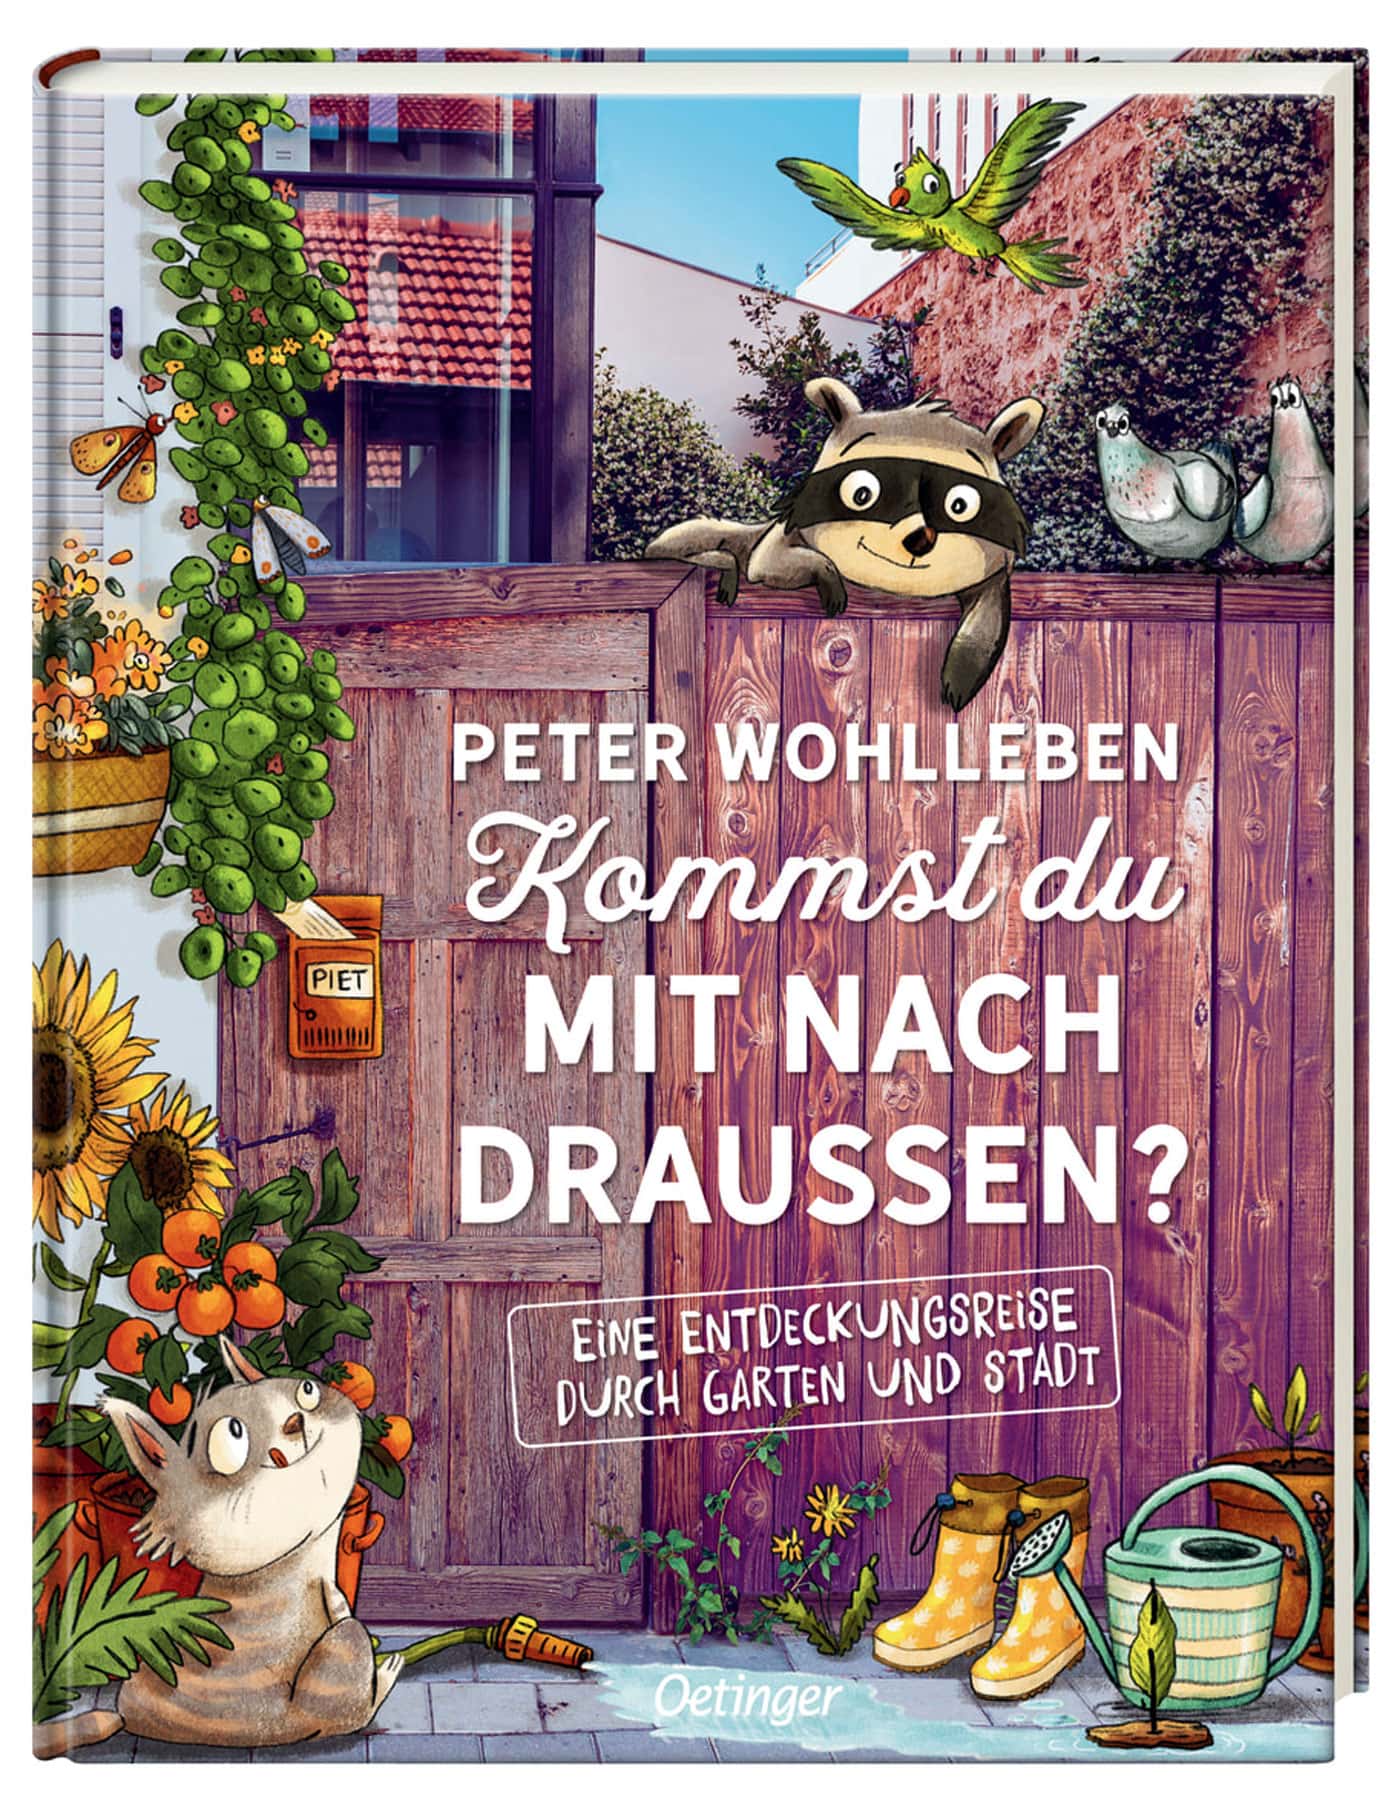 Draußenabenteuer – Kinderbuch-Tipp: Entdeckungsreise Garten und Stadtnatur für Kinder // HIMBEER